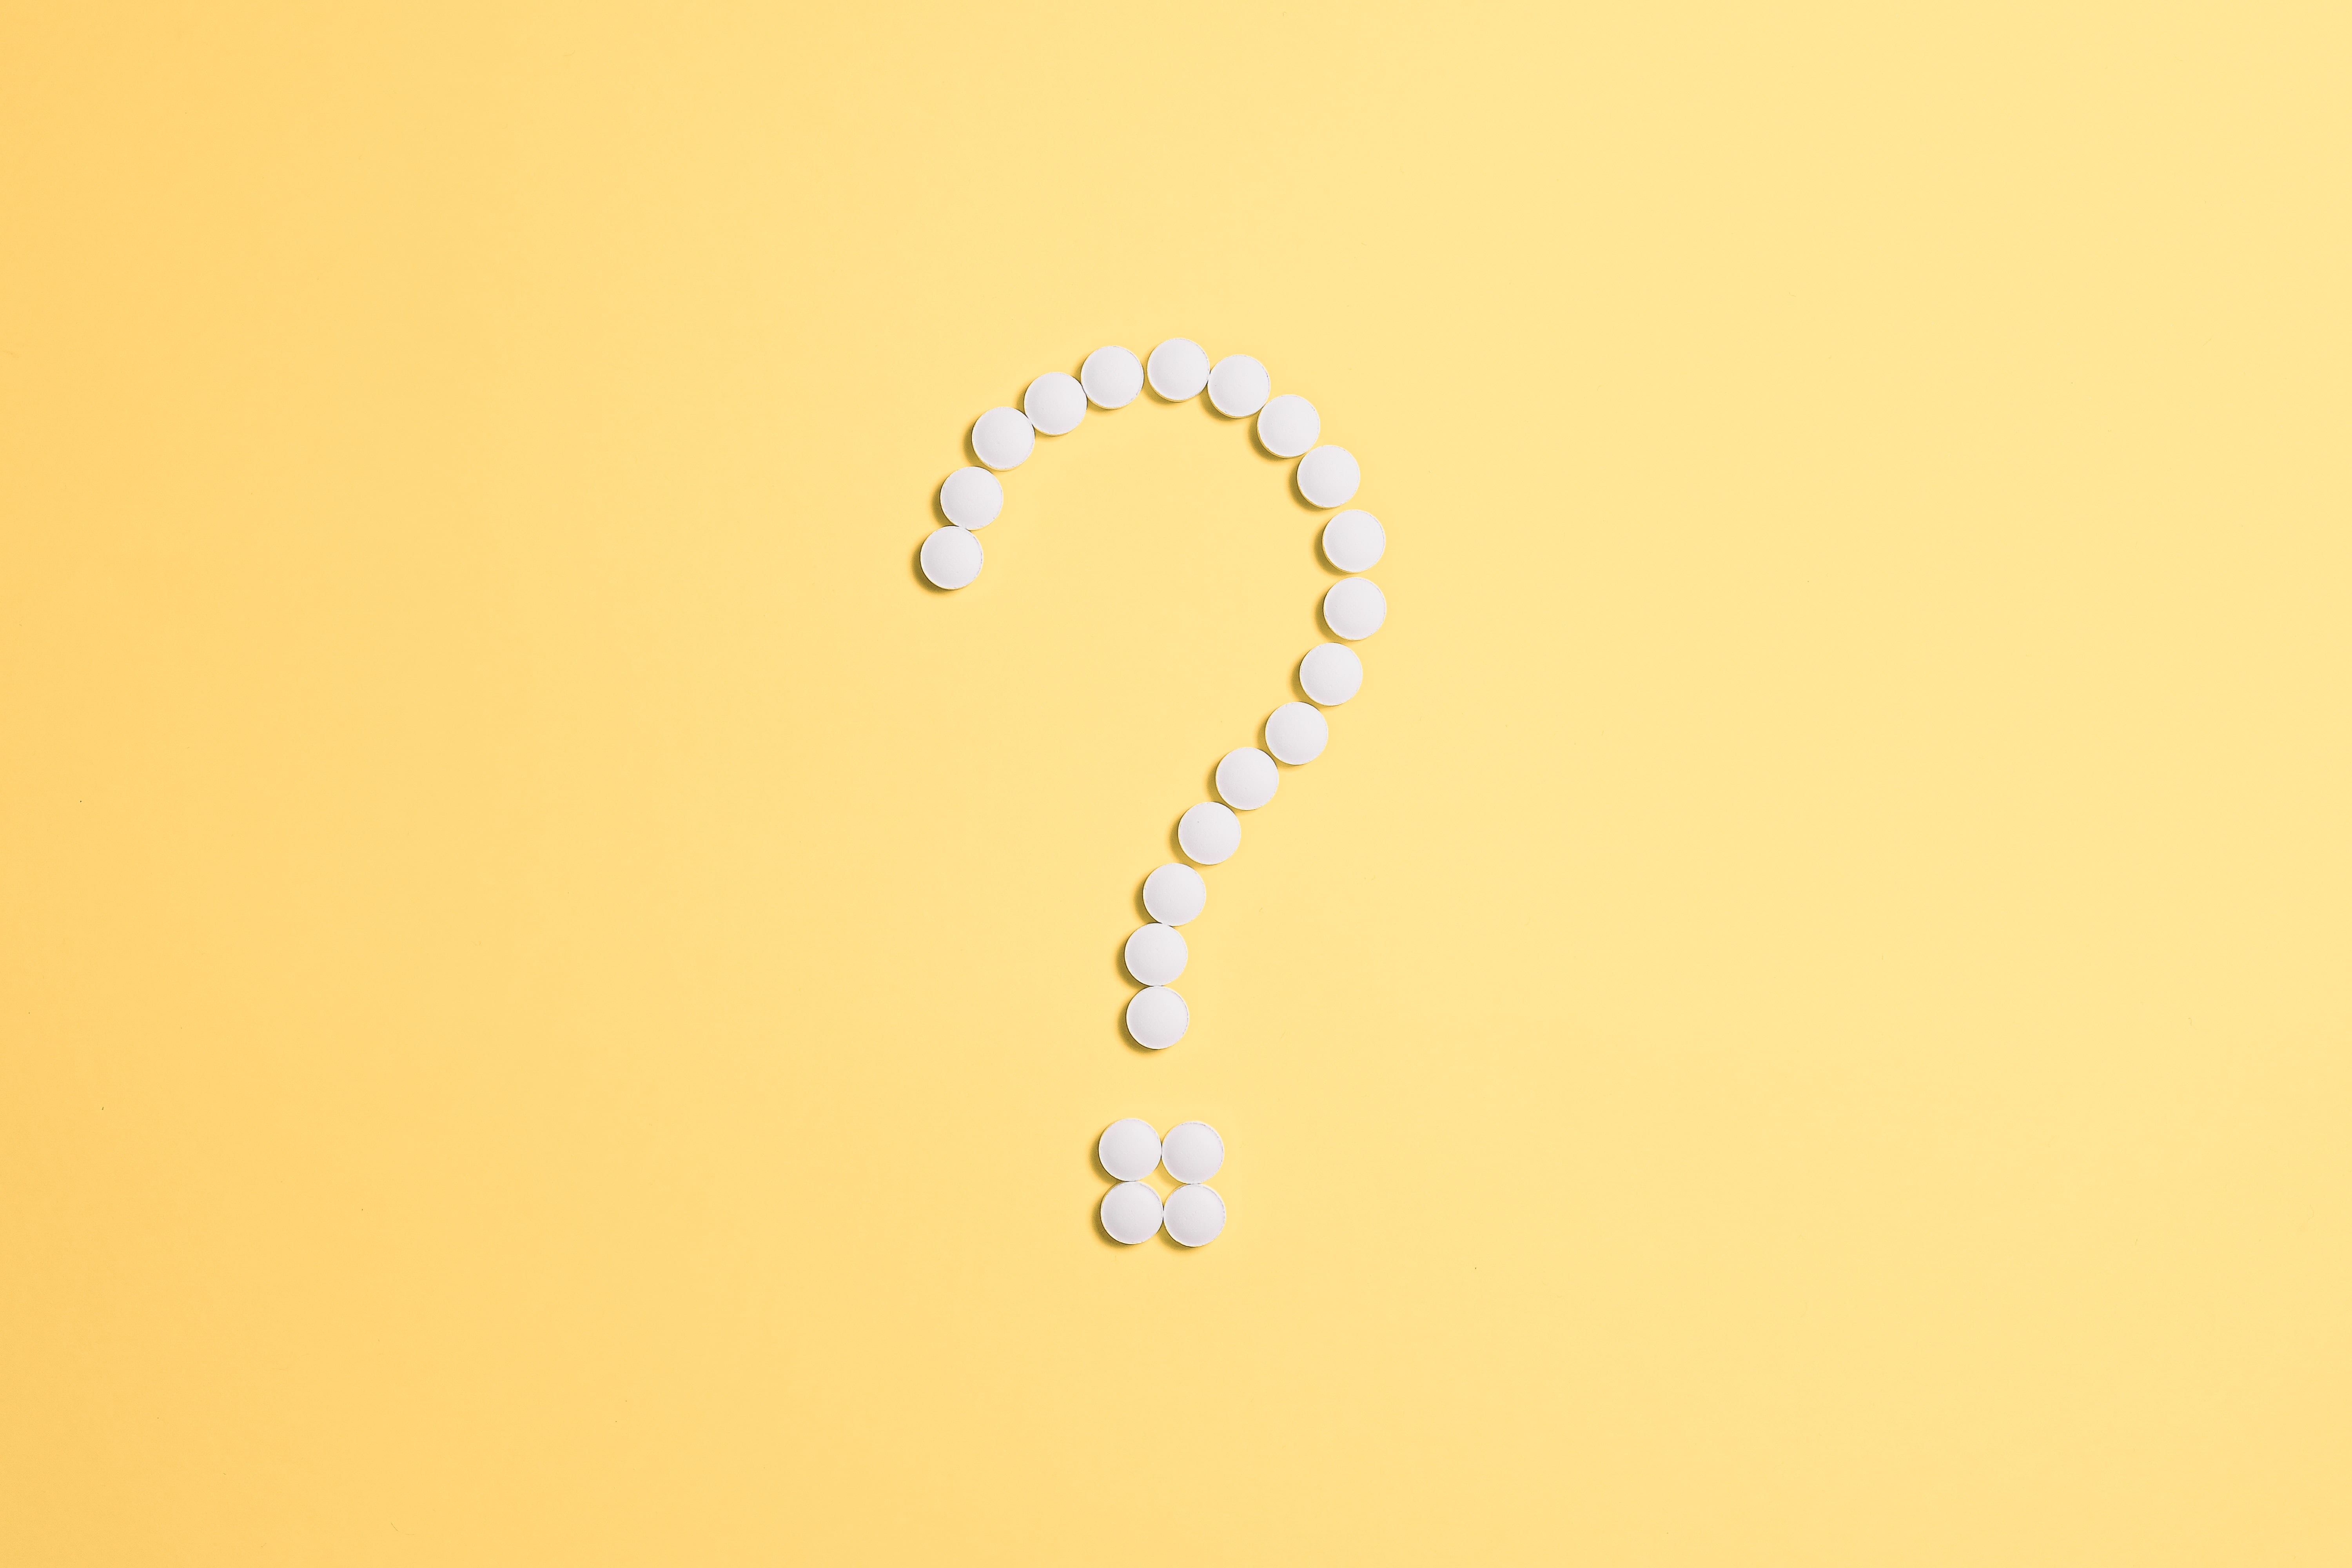 Reseñas de Resurge: ¿Funcionan las píldoras Resurge? [Actualización de 2020]